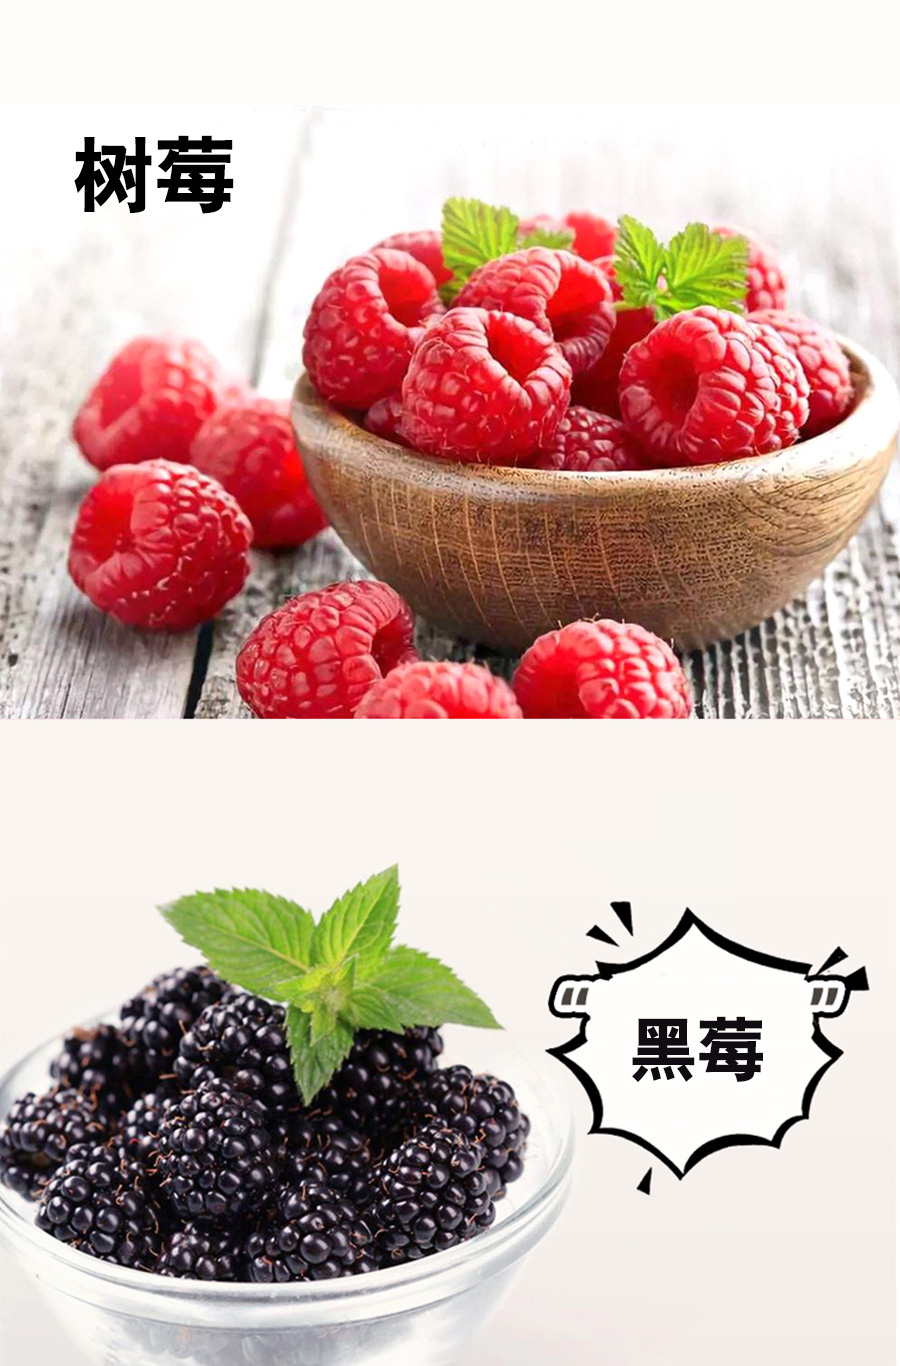 百未草蓝莓黑莓树莓复合饮品批发 多规格异袋装植物饮料加工 山东